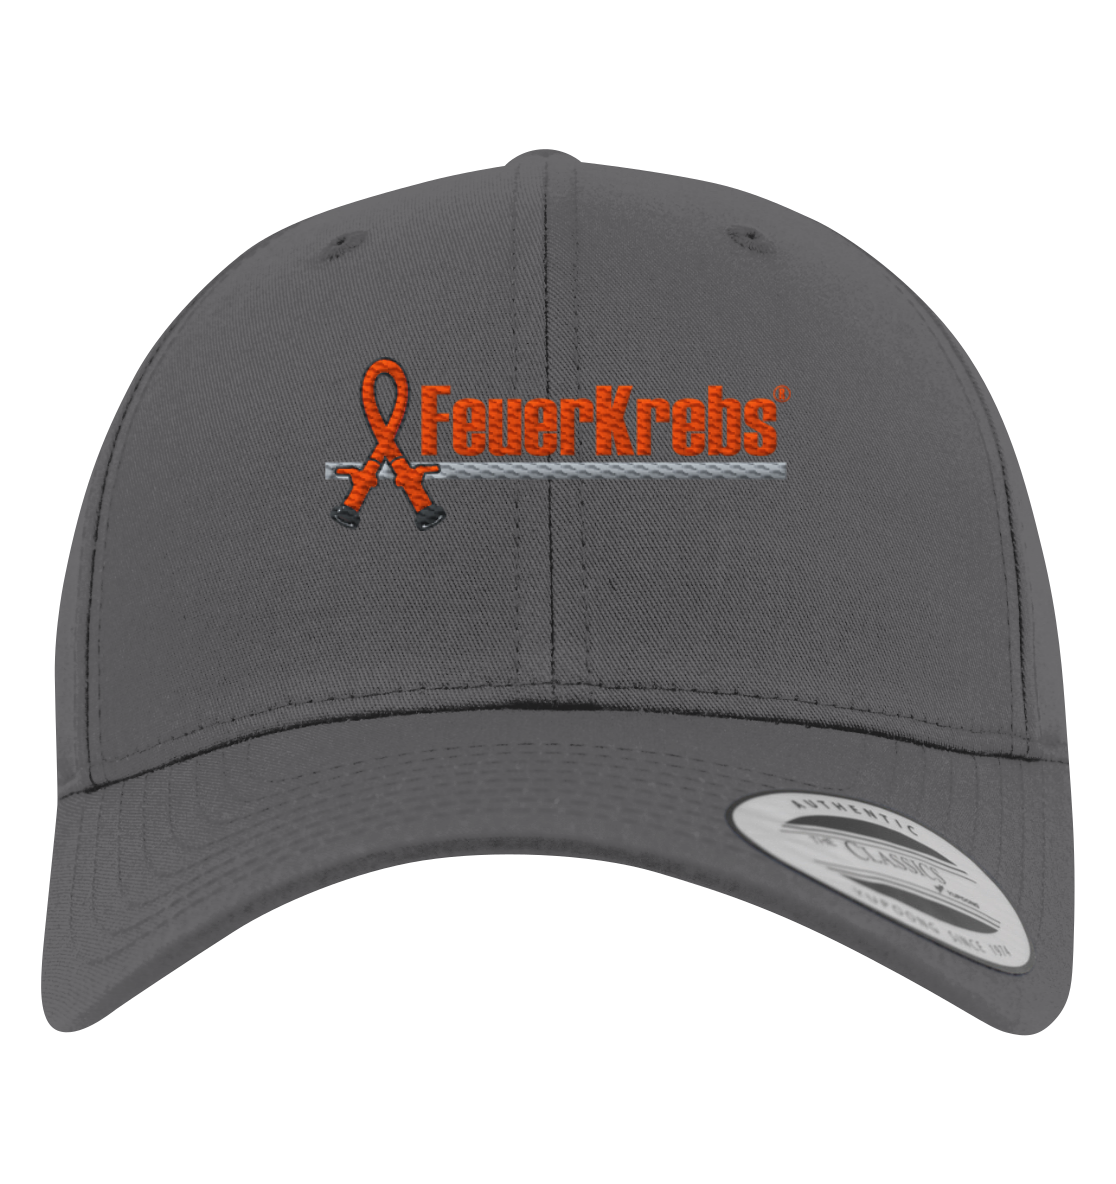 FeuerKrebs® Basecap - FeuerKrebs-Logo - Premium Baseball Cap